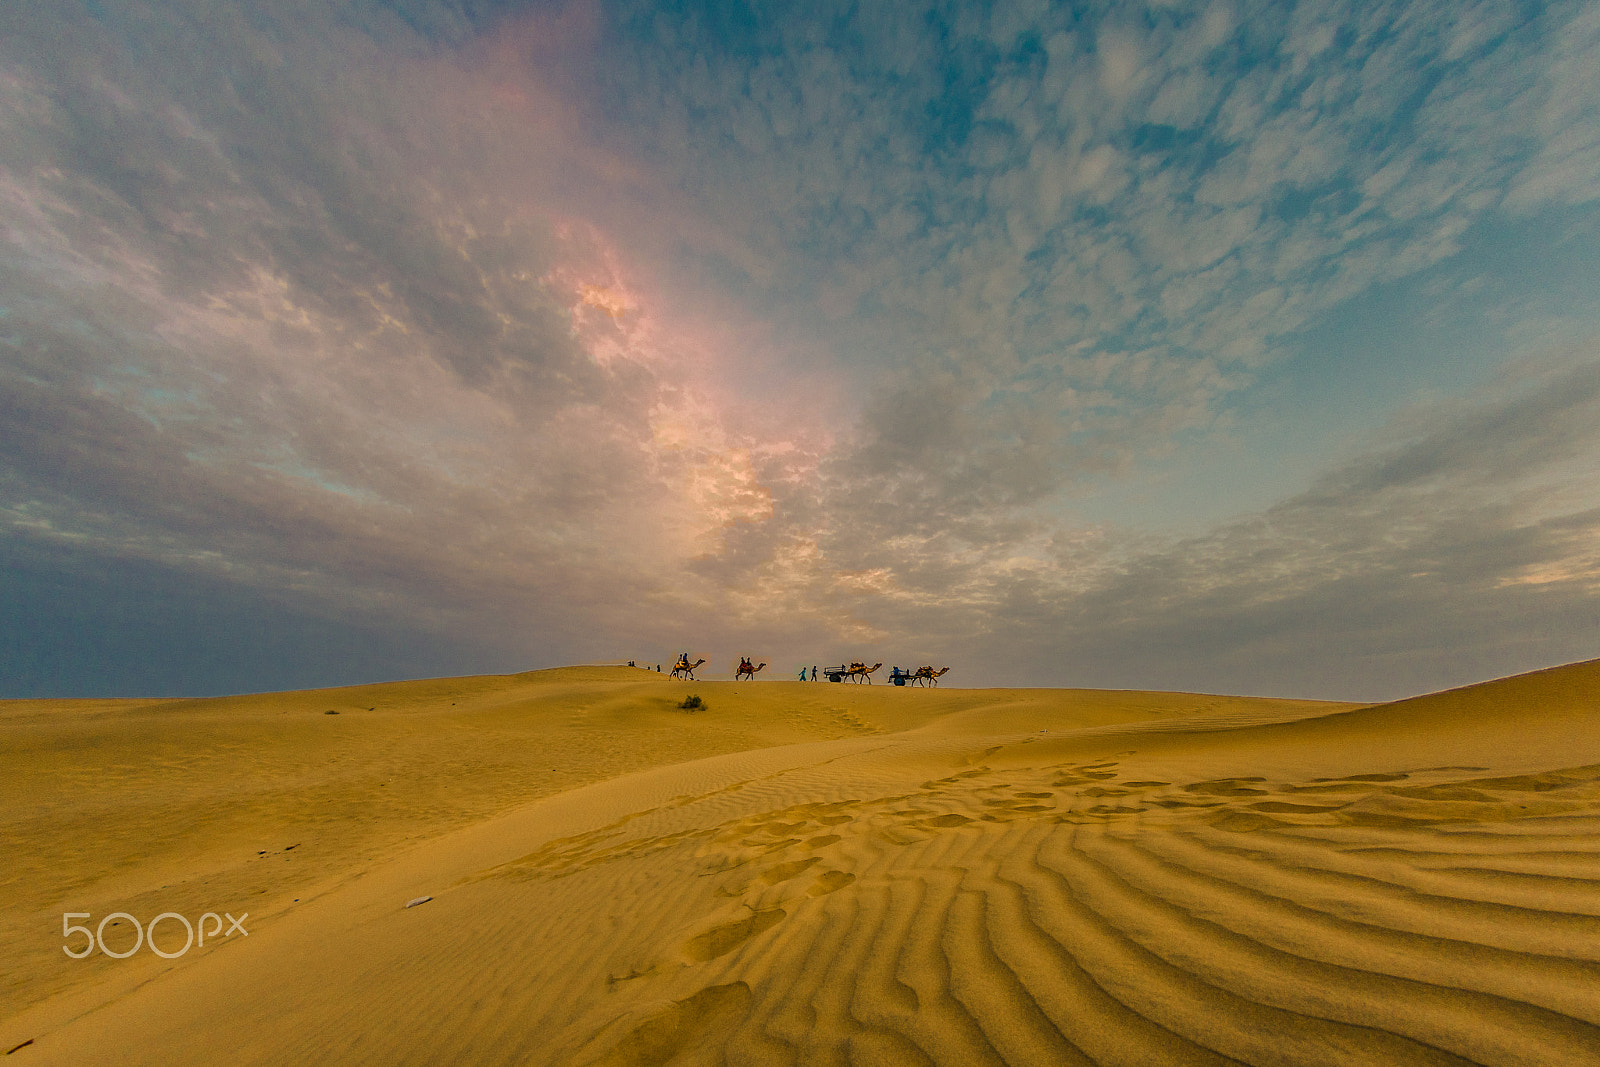 Pentax K-3 II sample photo. Desert thar. sunset photography